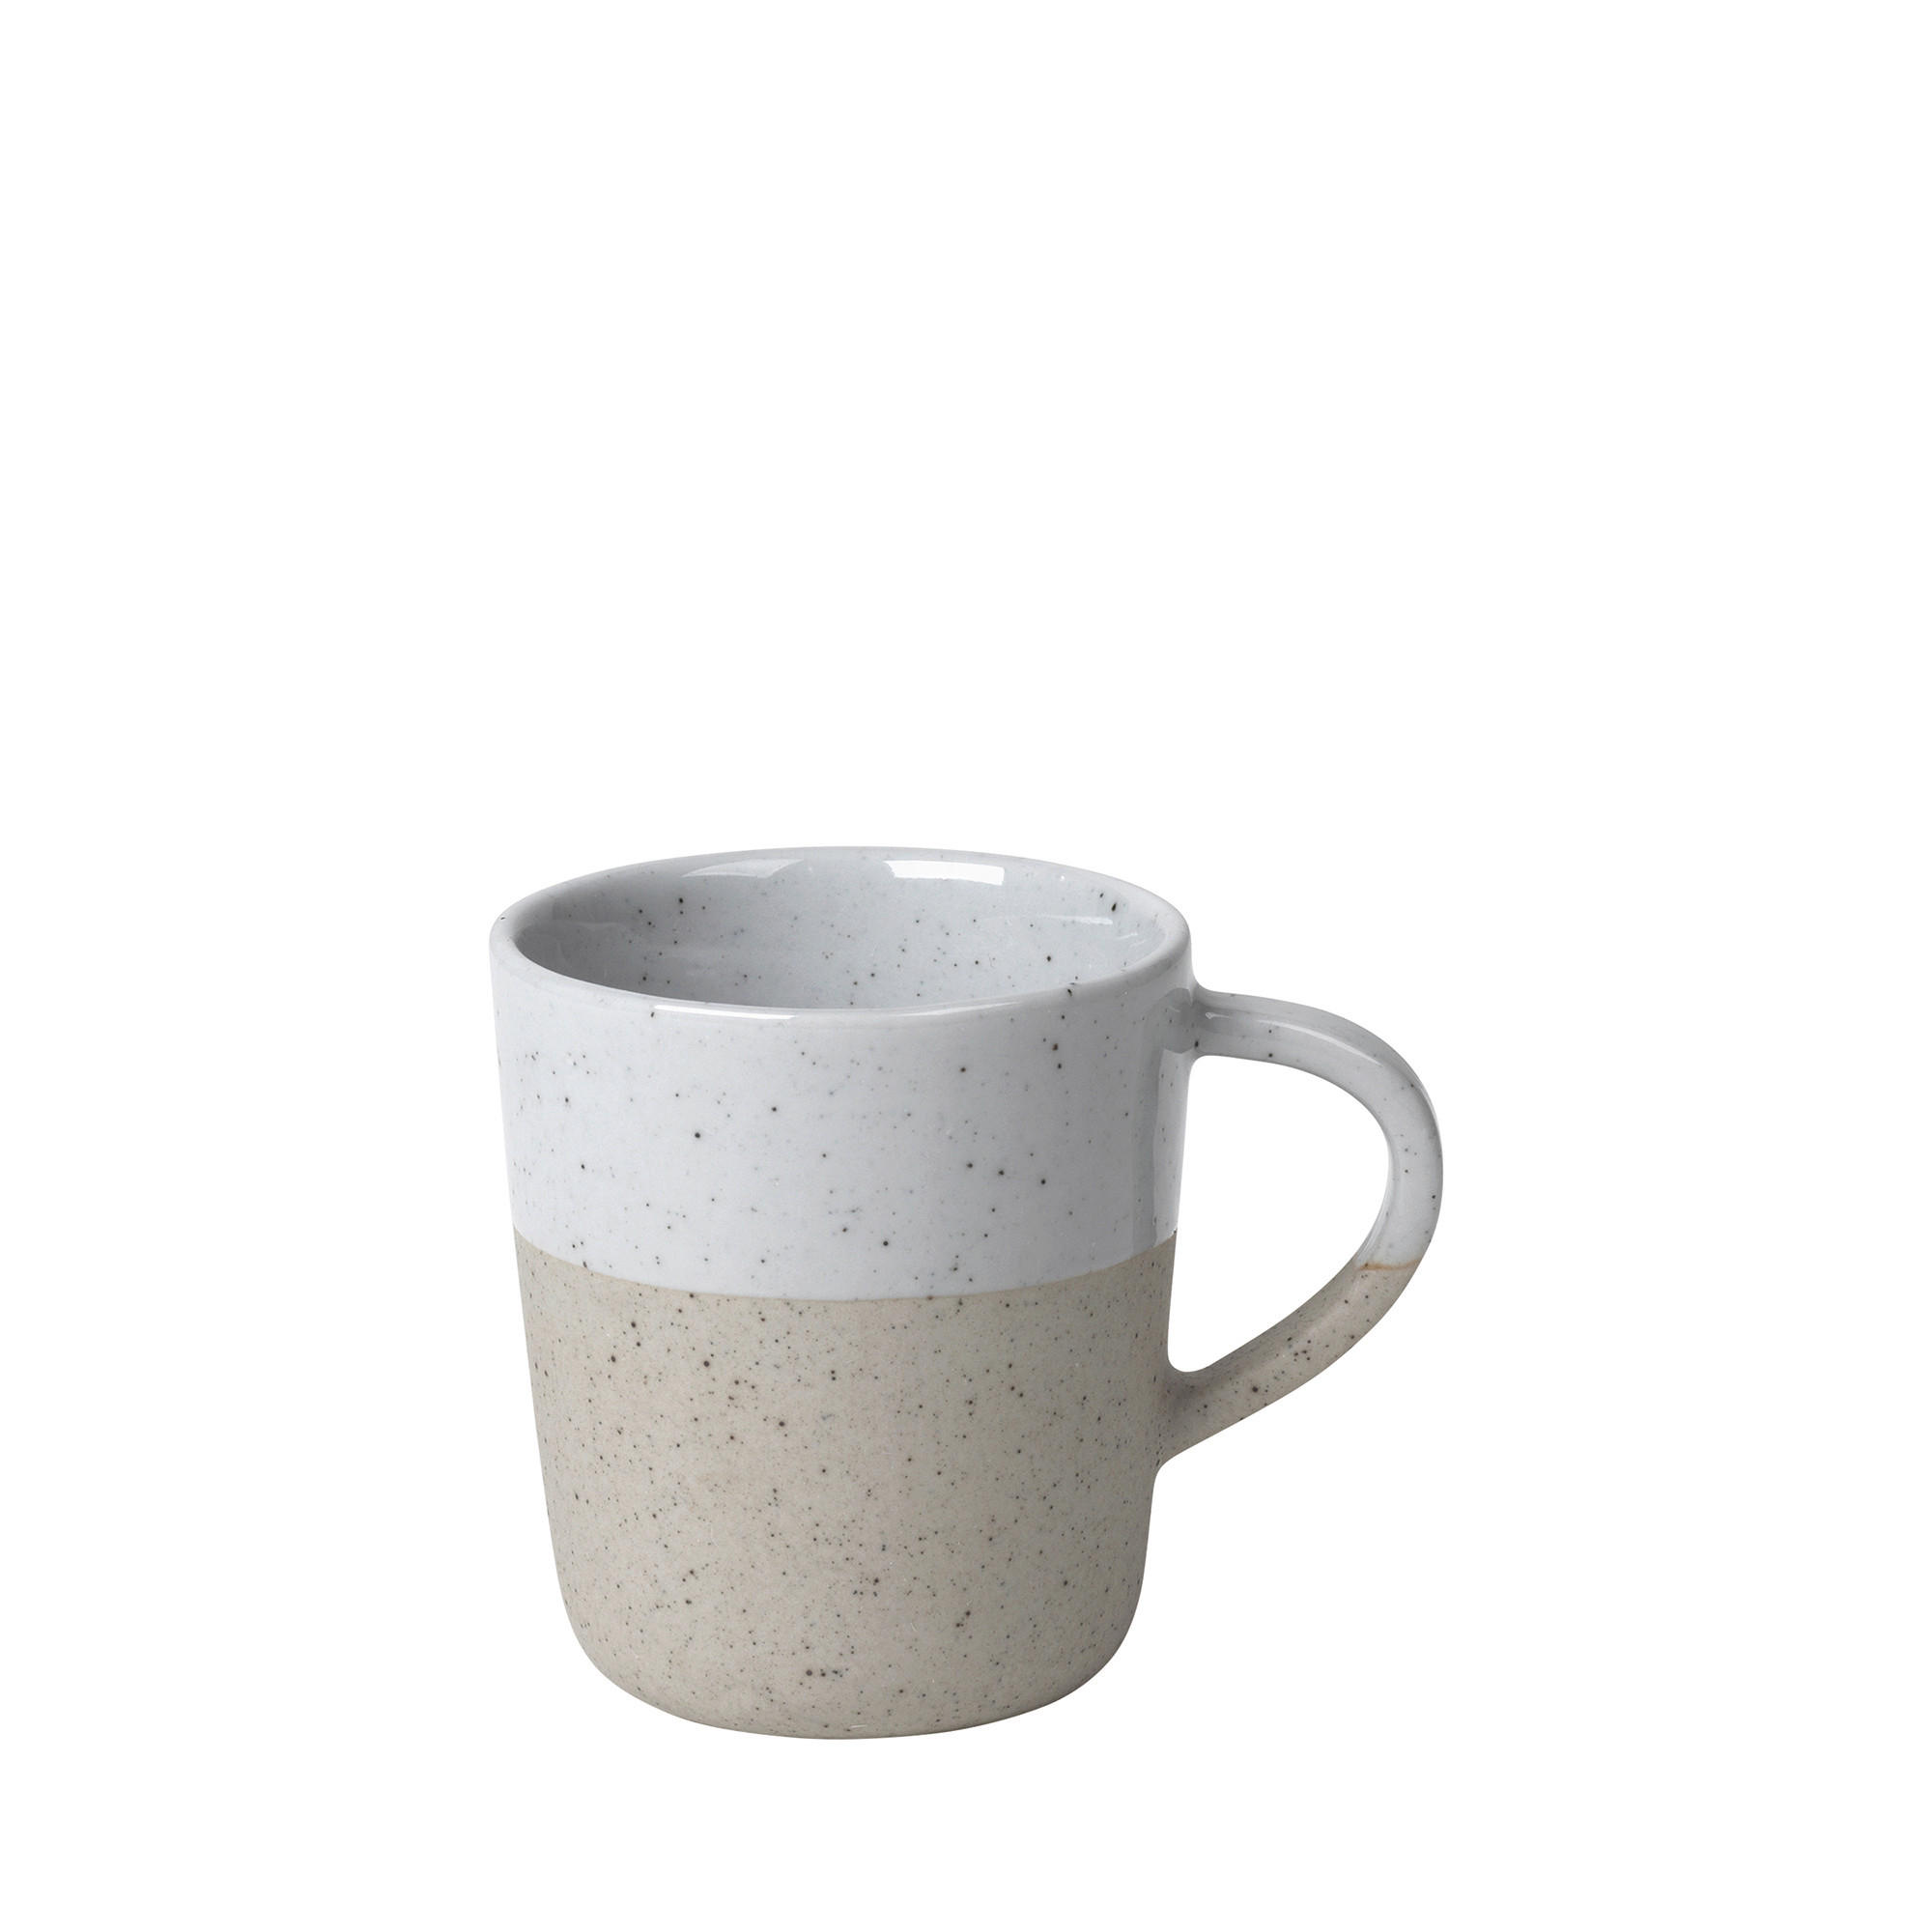 ESPRESSOTASSE - Beige/Grau, Design, Keramik (7/5,5cm) - Blomus